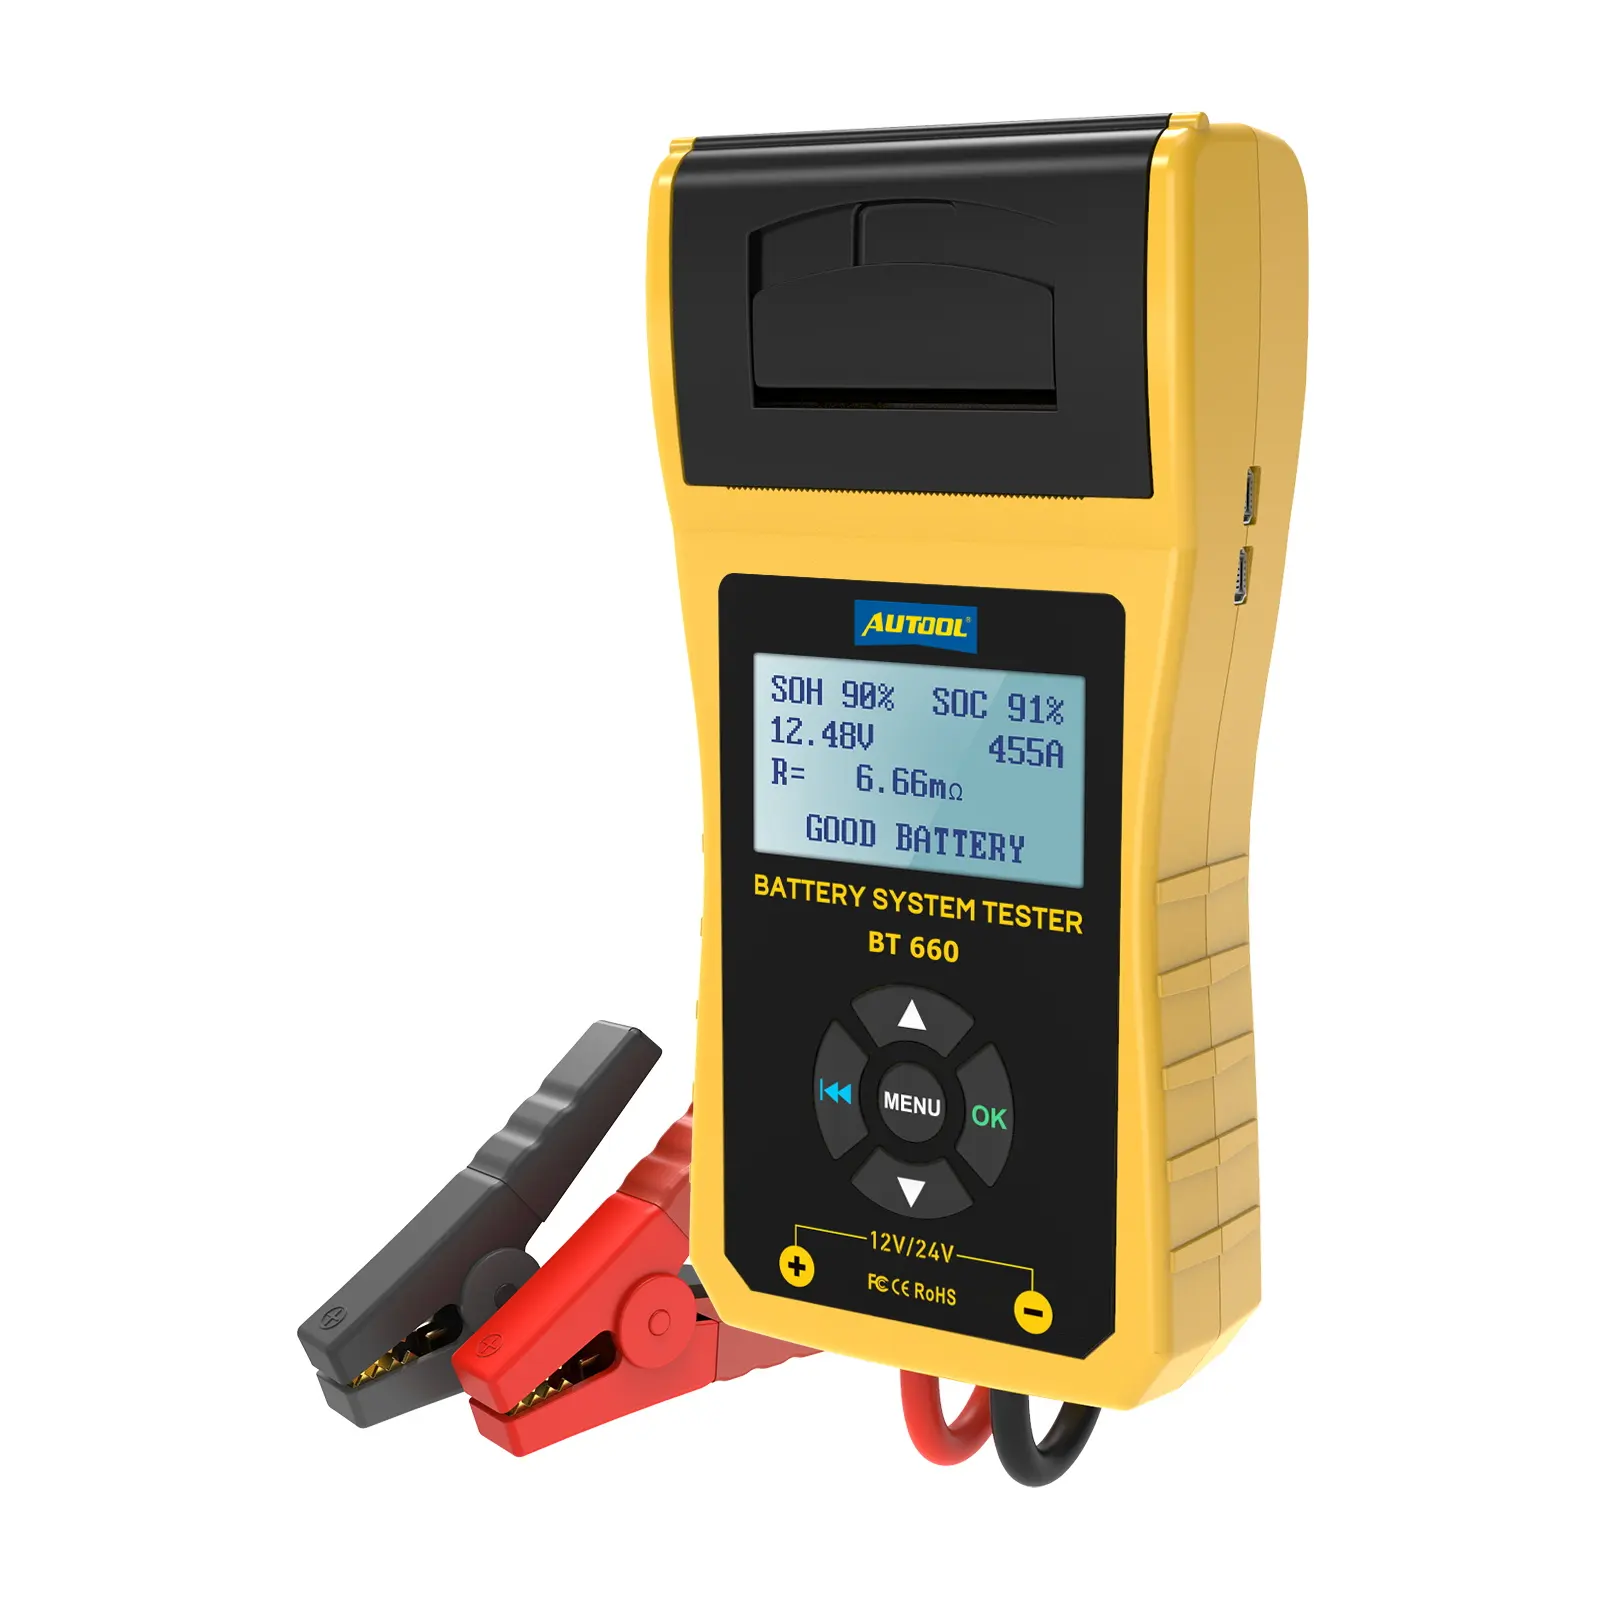 Autool Alat Diagnostik BT660, Lebih Baik dari Melepas BST-760 Penguji Baterai Mobil dengan Printer